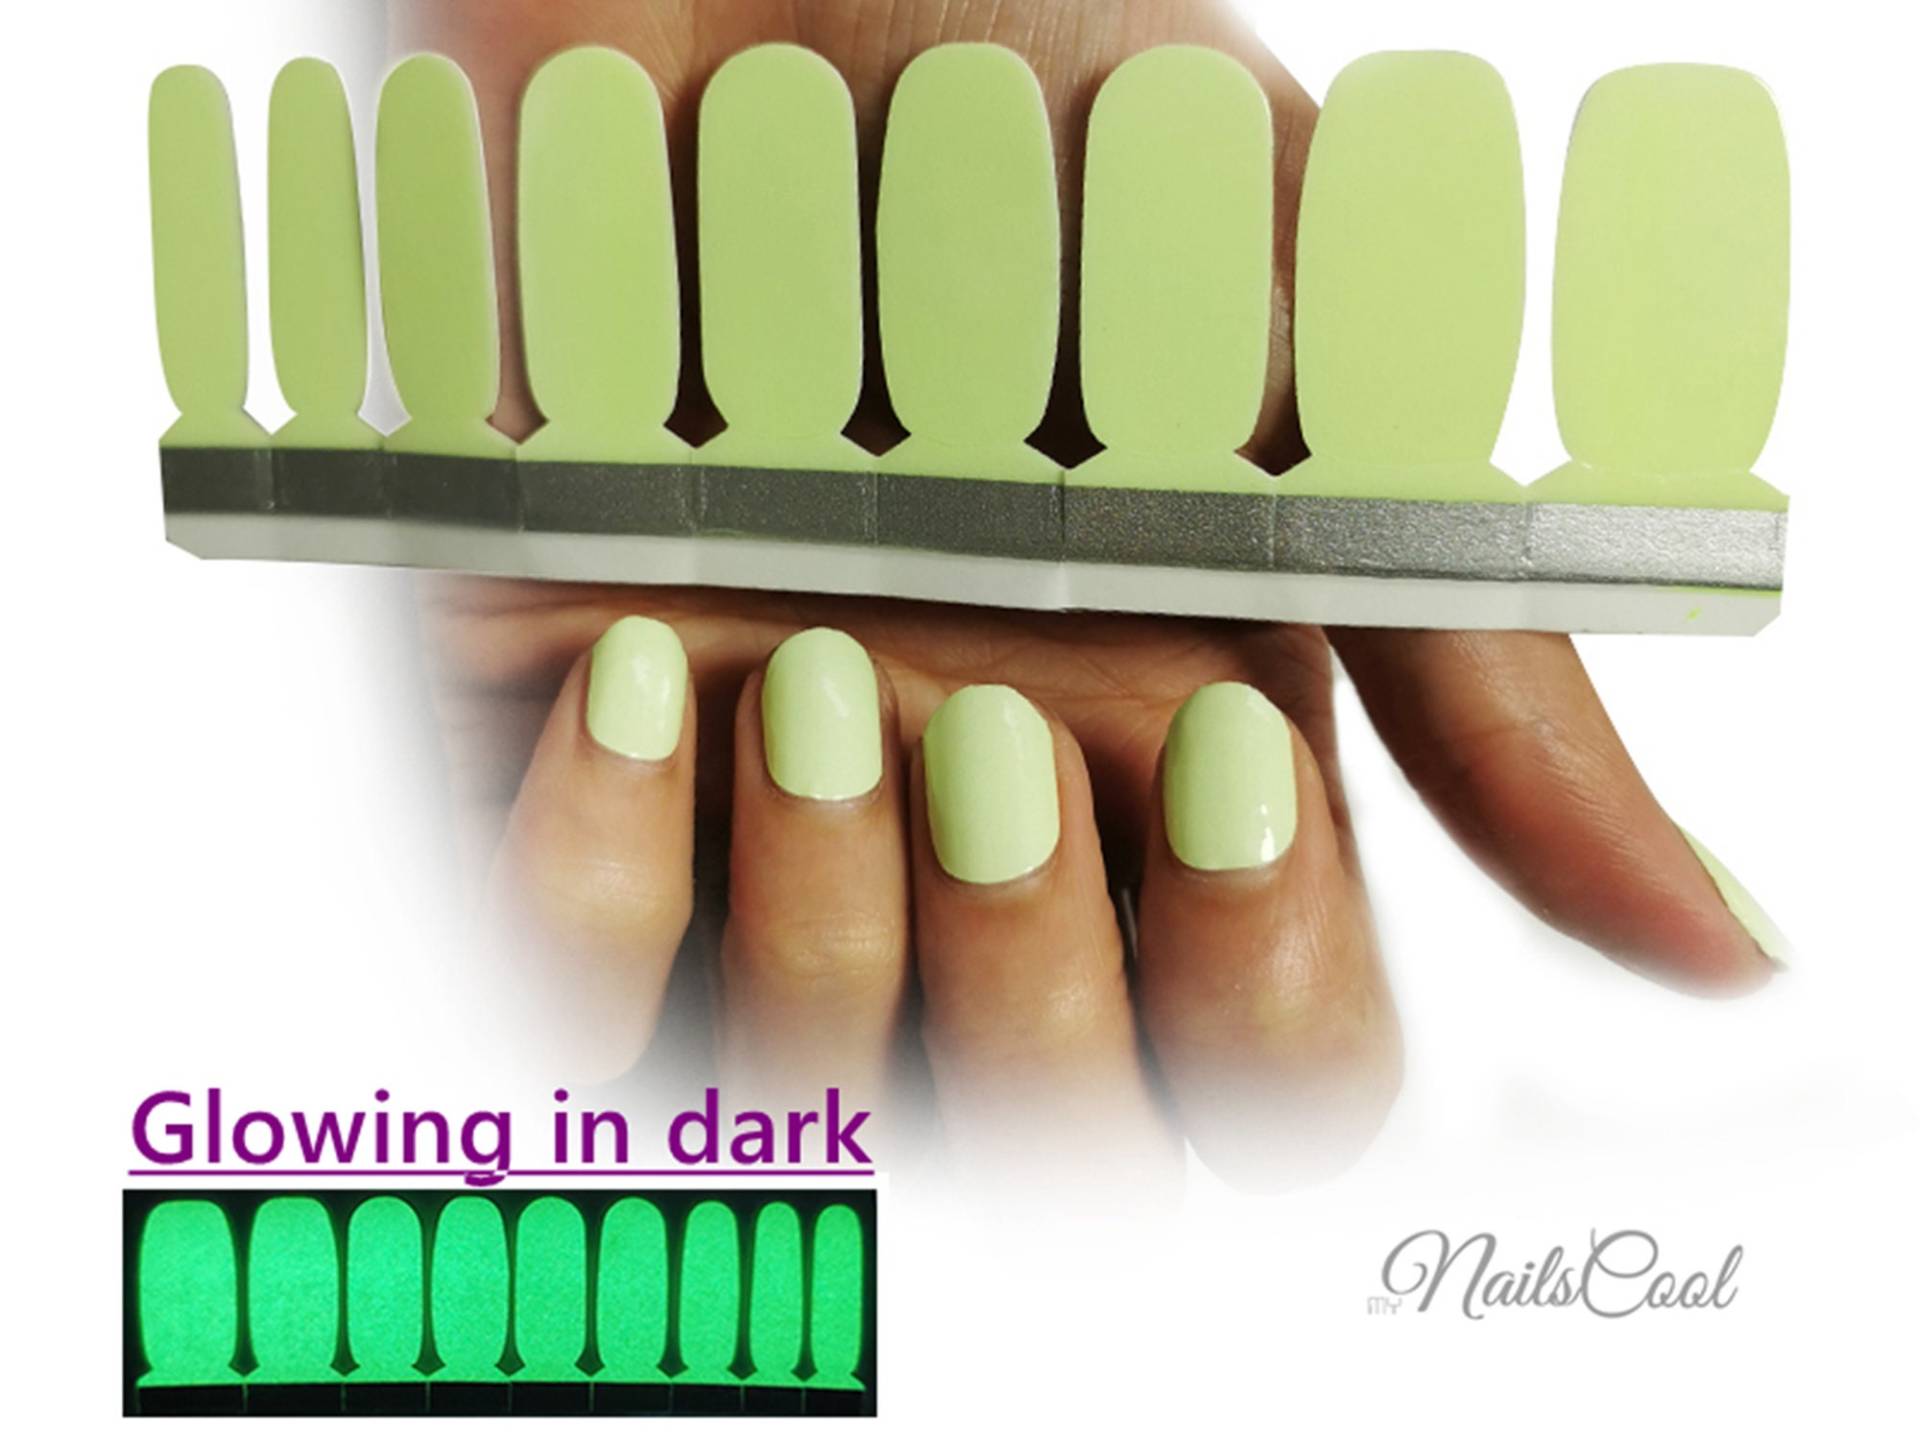 Grüne Farbe Glowing in Dark Echte Nagellack Streifen Nailart Wraps Street Art 18 Strips von myNailsCool